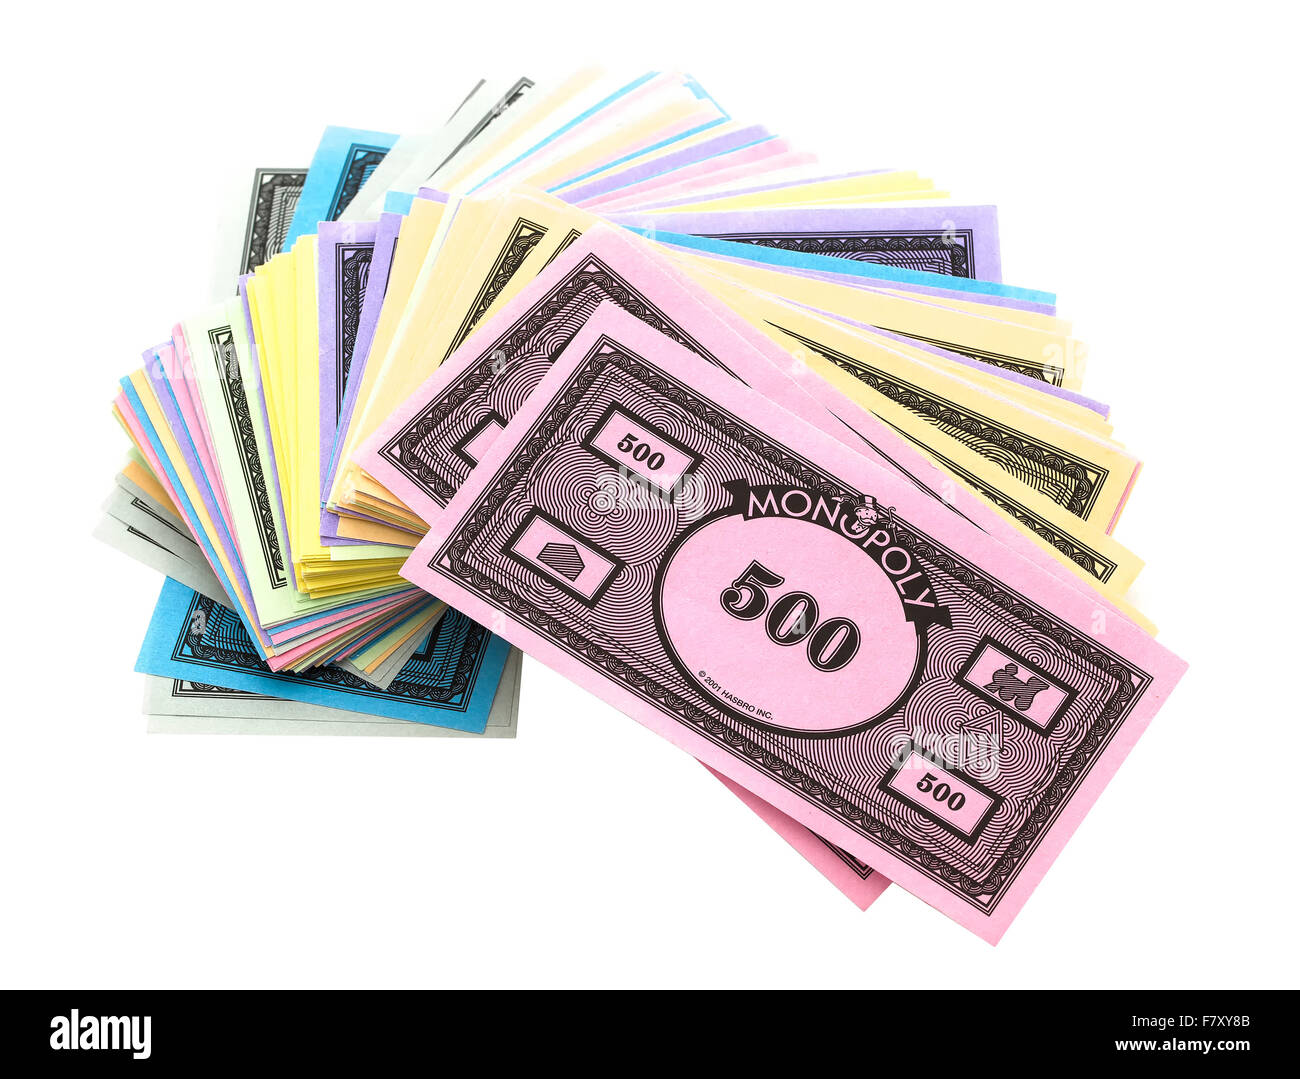 Monopoly money immagini e fotografie stock ad alta risoluzione - Alamy